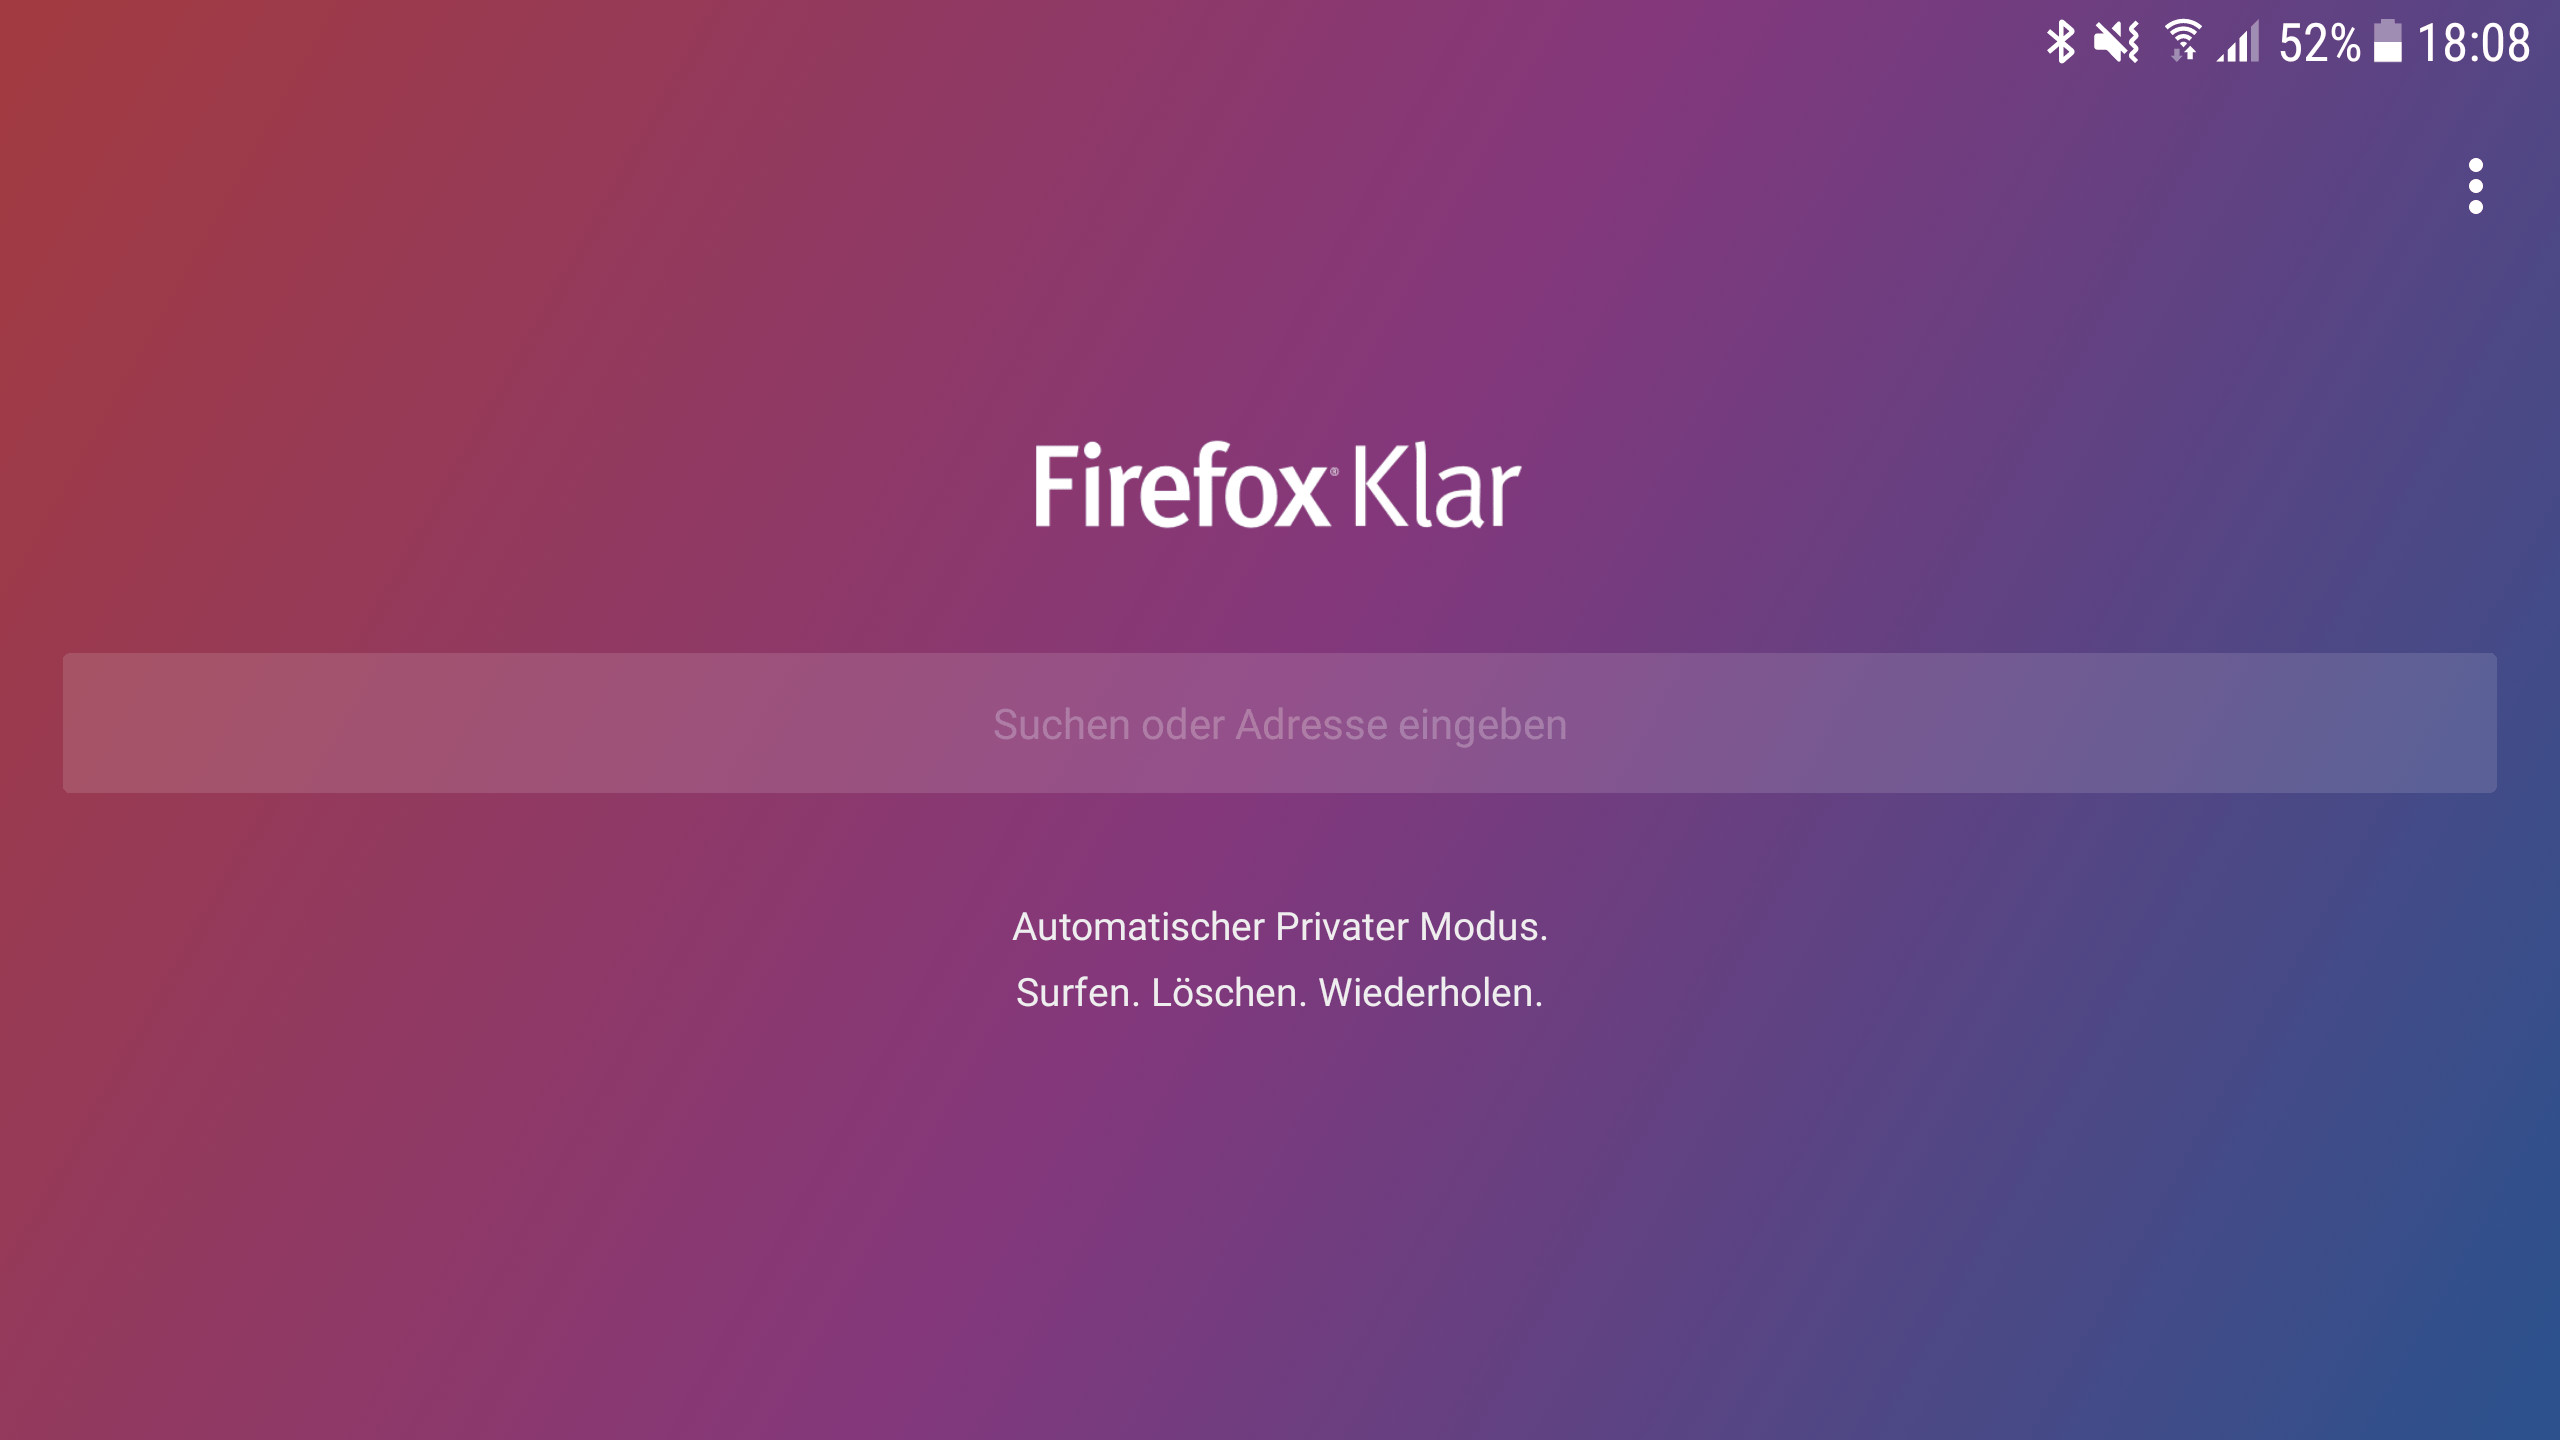 2560x1440 Firefox Klar fÃ¼r Android ausprobiert: Datenschutz-Browser von Mozilla  verÃ¶ffentlicht - AndroidPIT